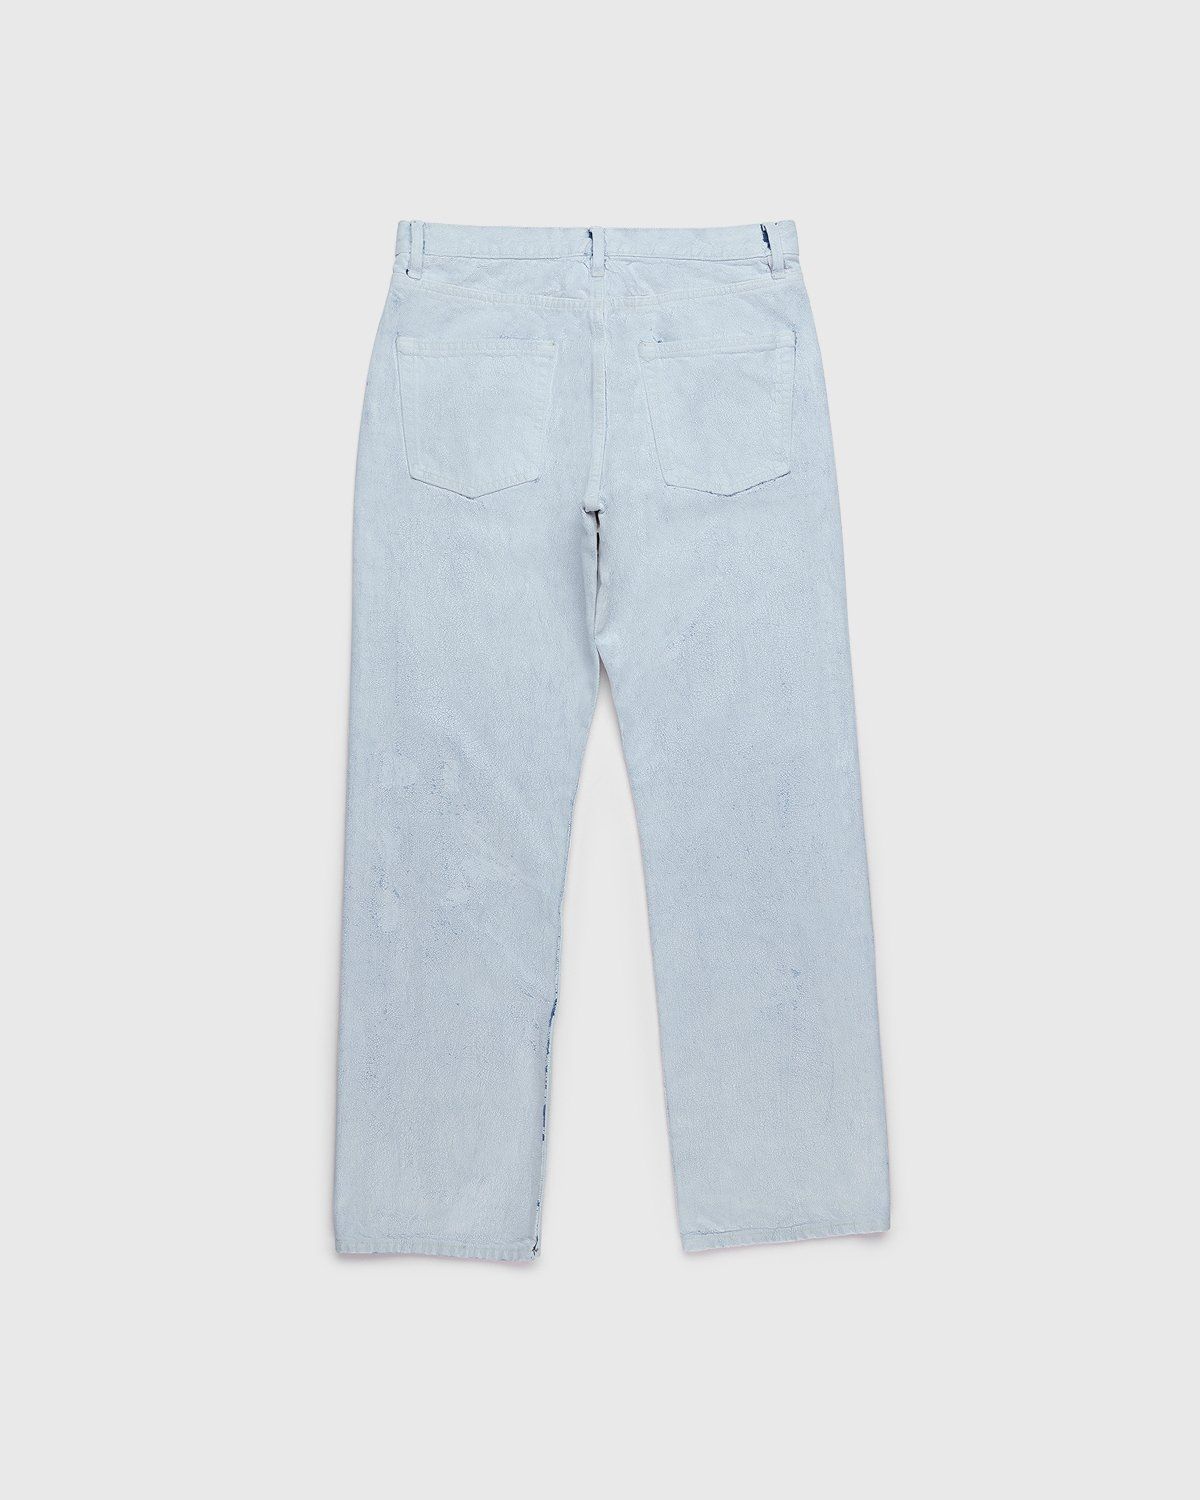 Maison Margiela – Bianchetto Boyfriend Jeans White - Pants - White - Image 2